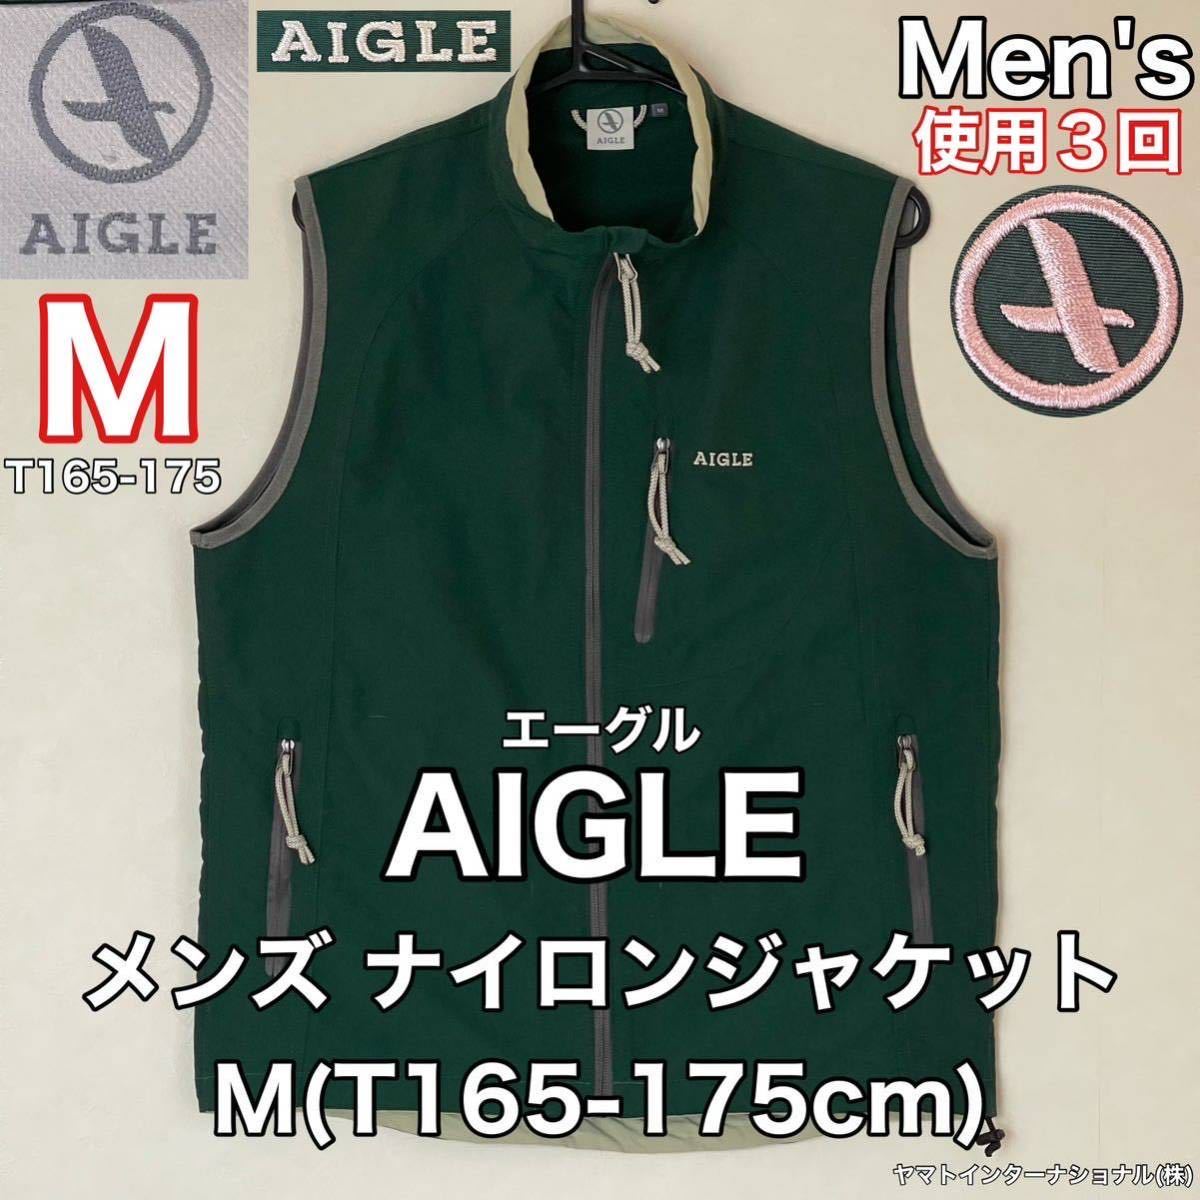 超美品 AIGLE(エーグル)メンズ ナイロン ジャケット M(T165-175cm)ベスト 使用3回 アウトドア スポーツ 防風 ヤマトインターナショナル(株)